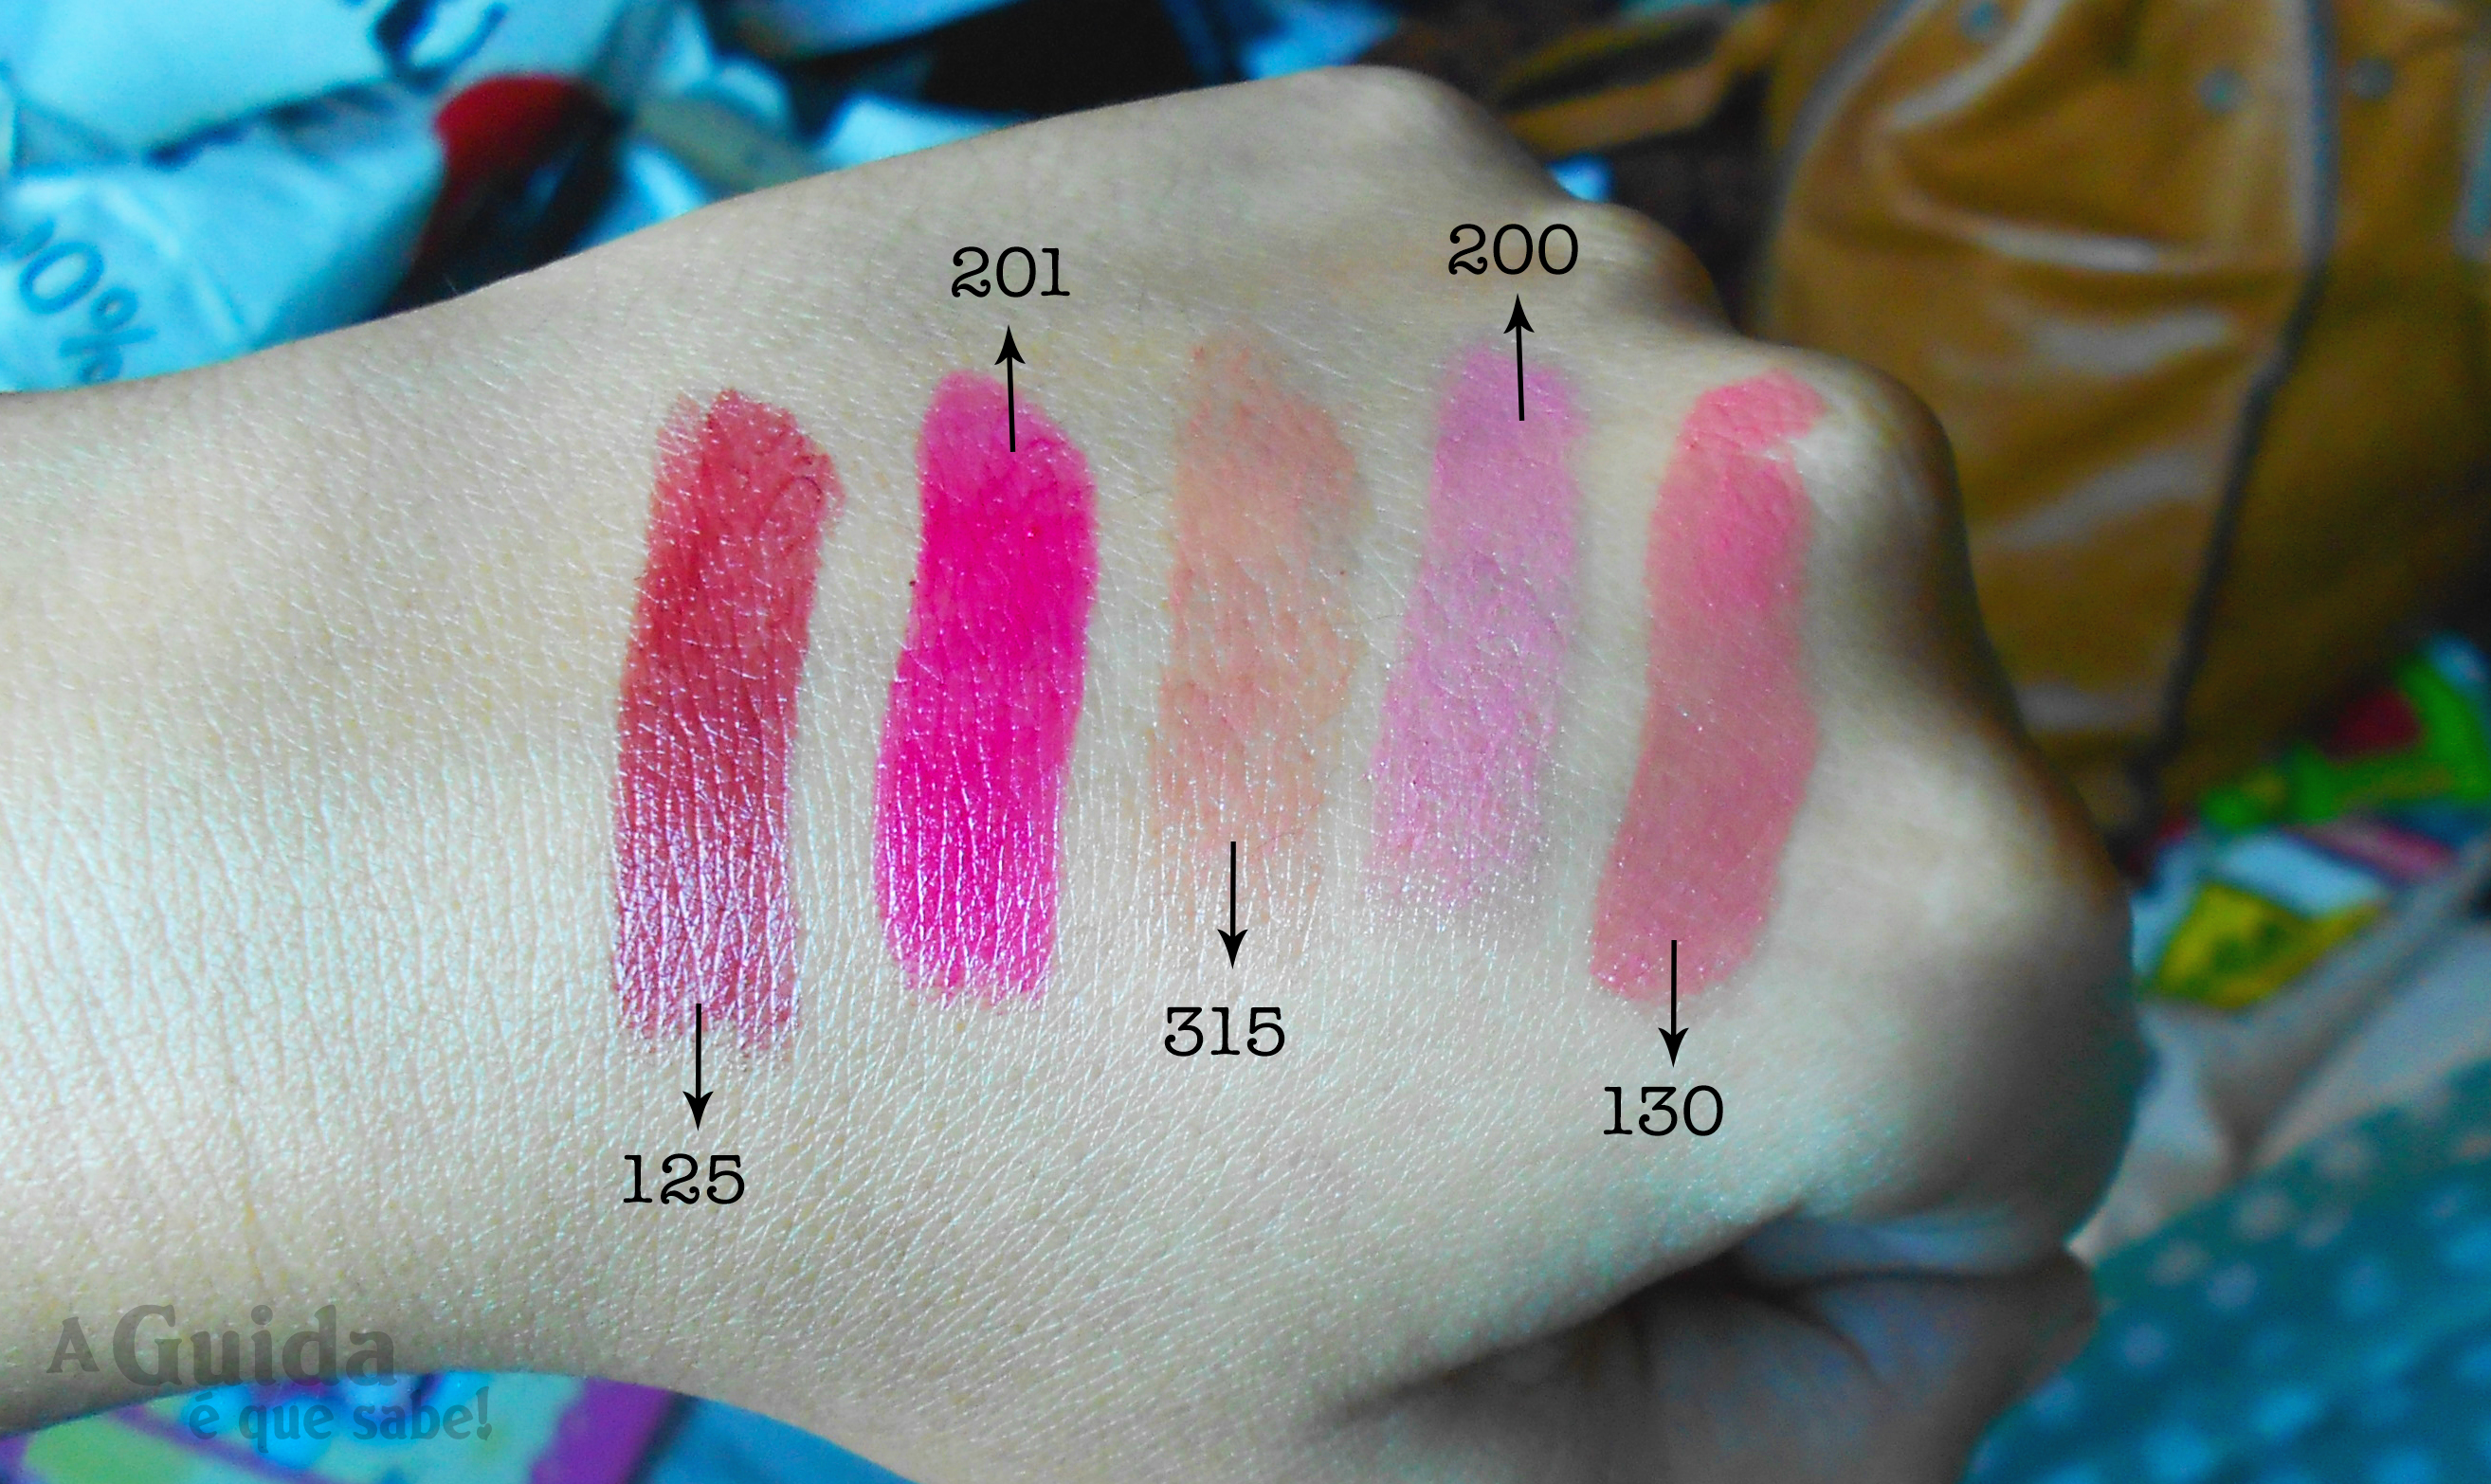 batom lipstick makeup maquilhagem cruelty free vegan the body shop review swatch resenha color colour crush